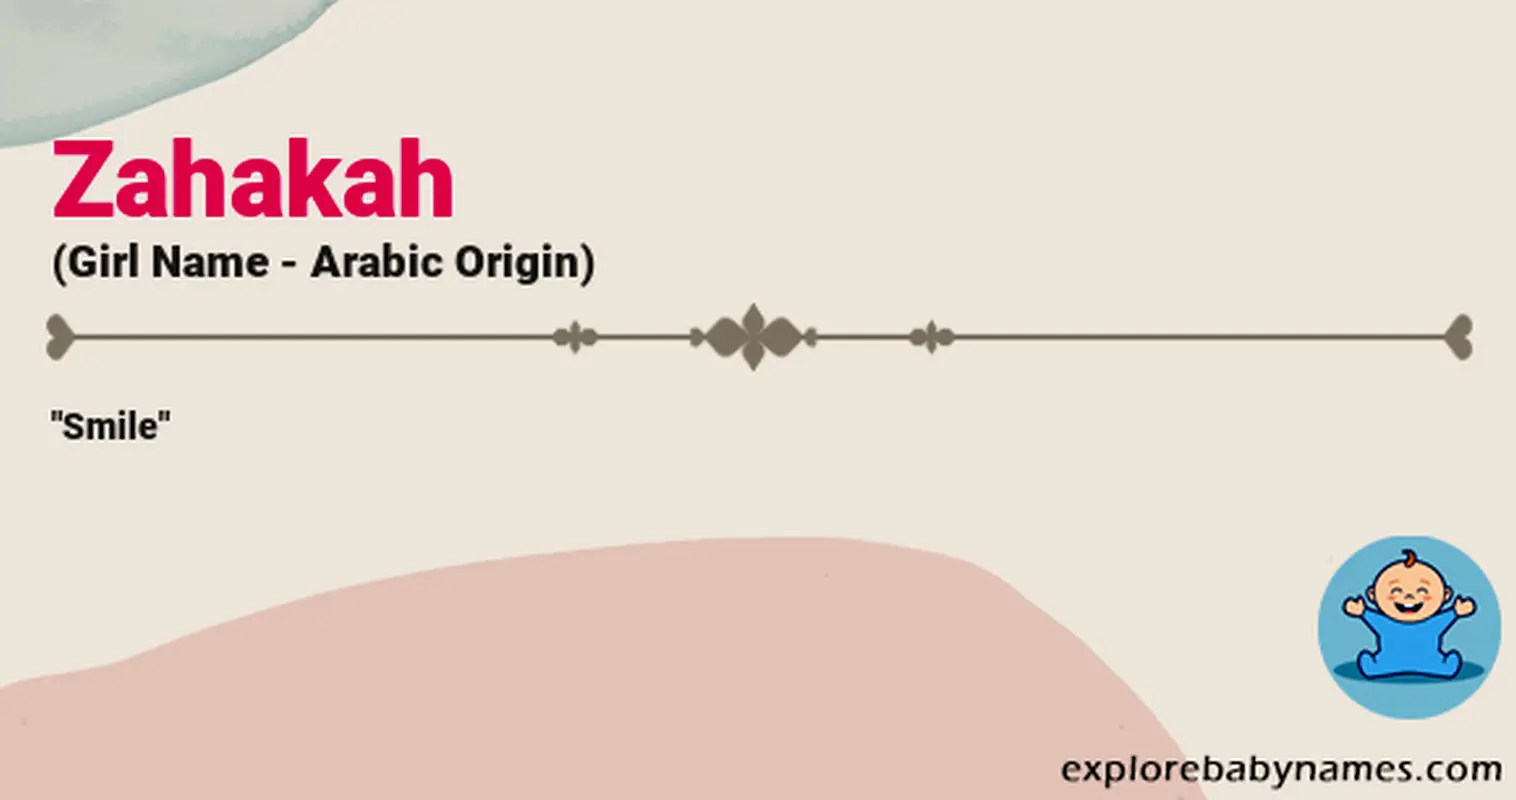 Meaning of Zahakah